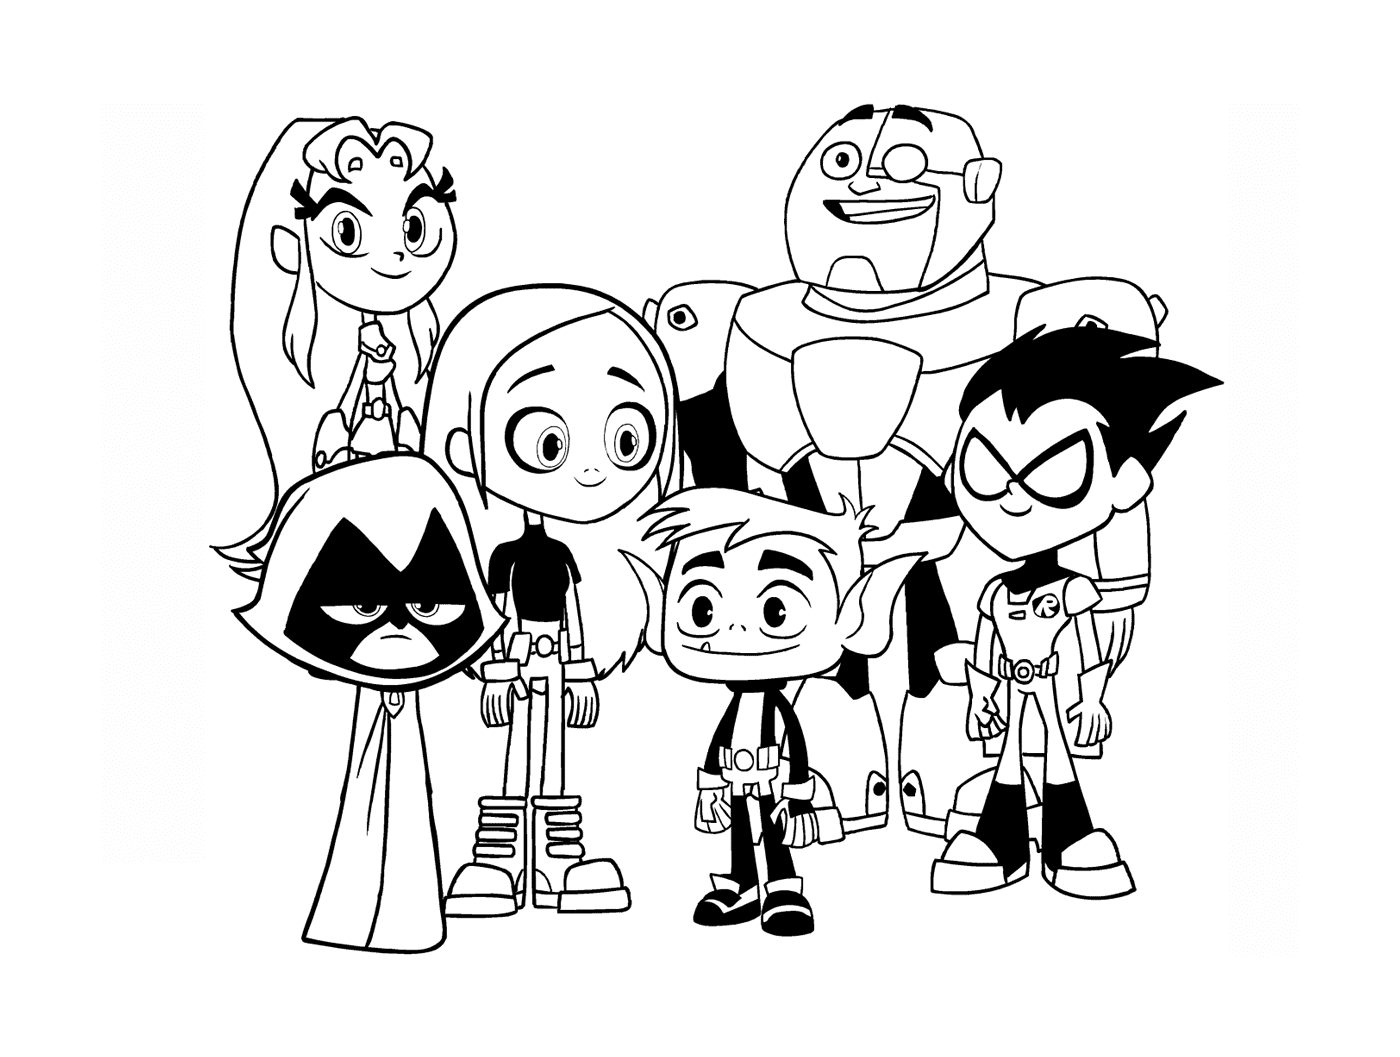  personagens do grupo de desenhos animados stand 